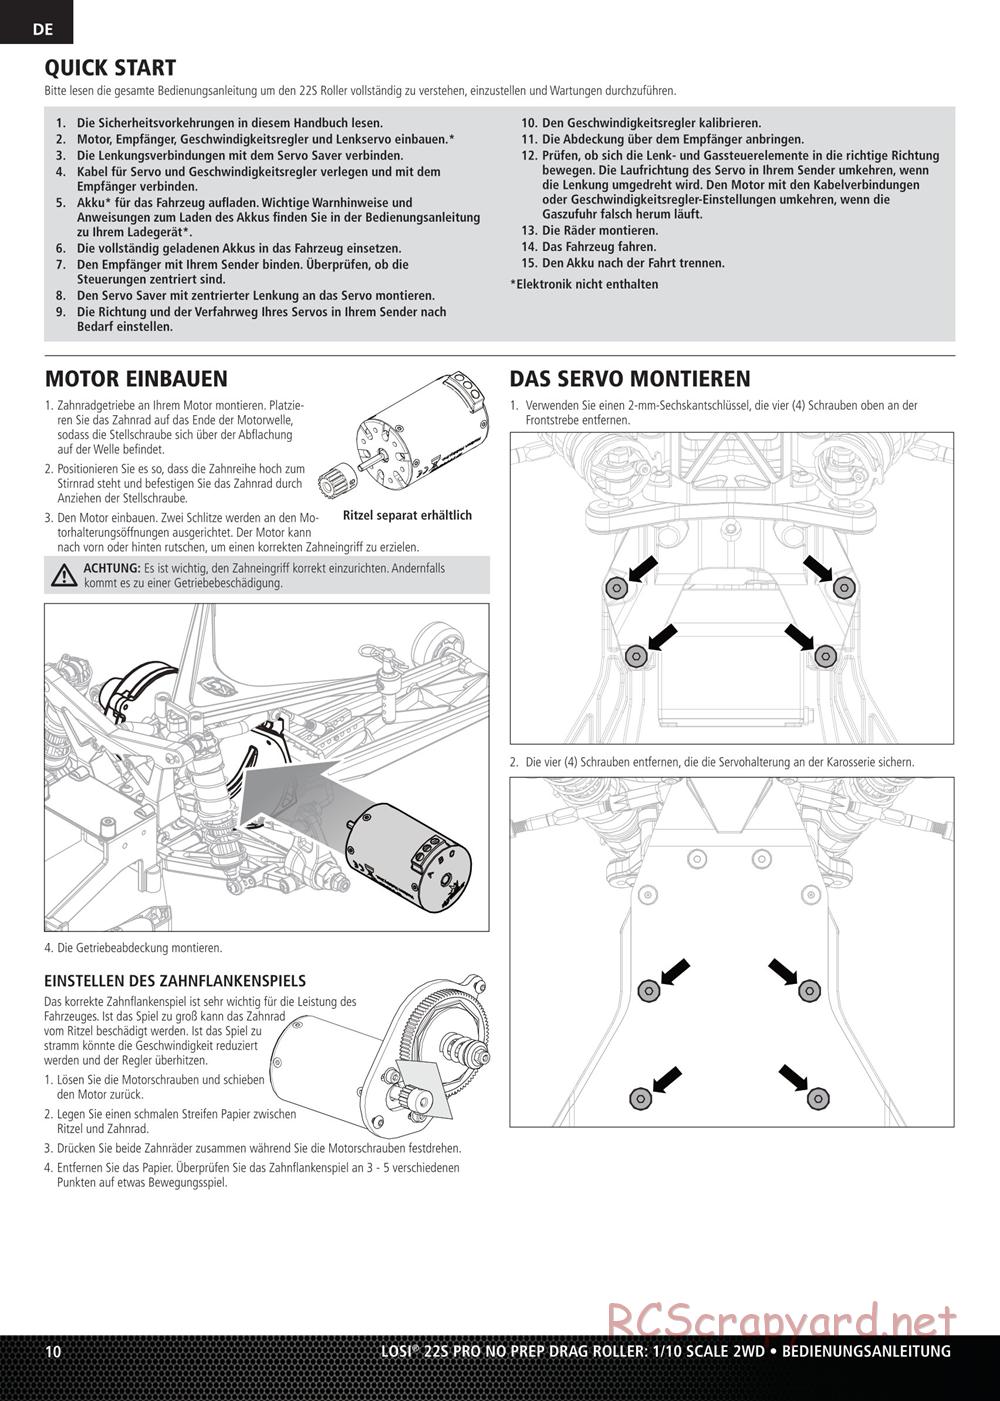 Team Losi - No Prep Drag Roller - Manual - Page 10